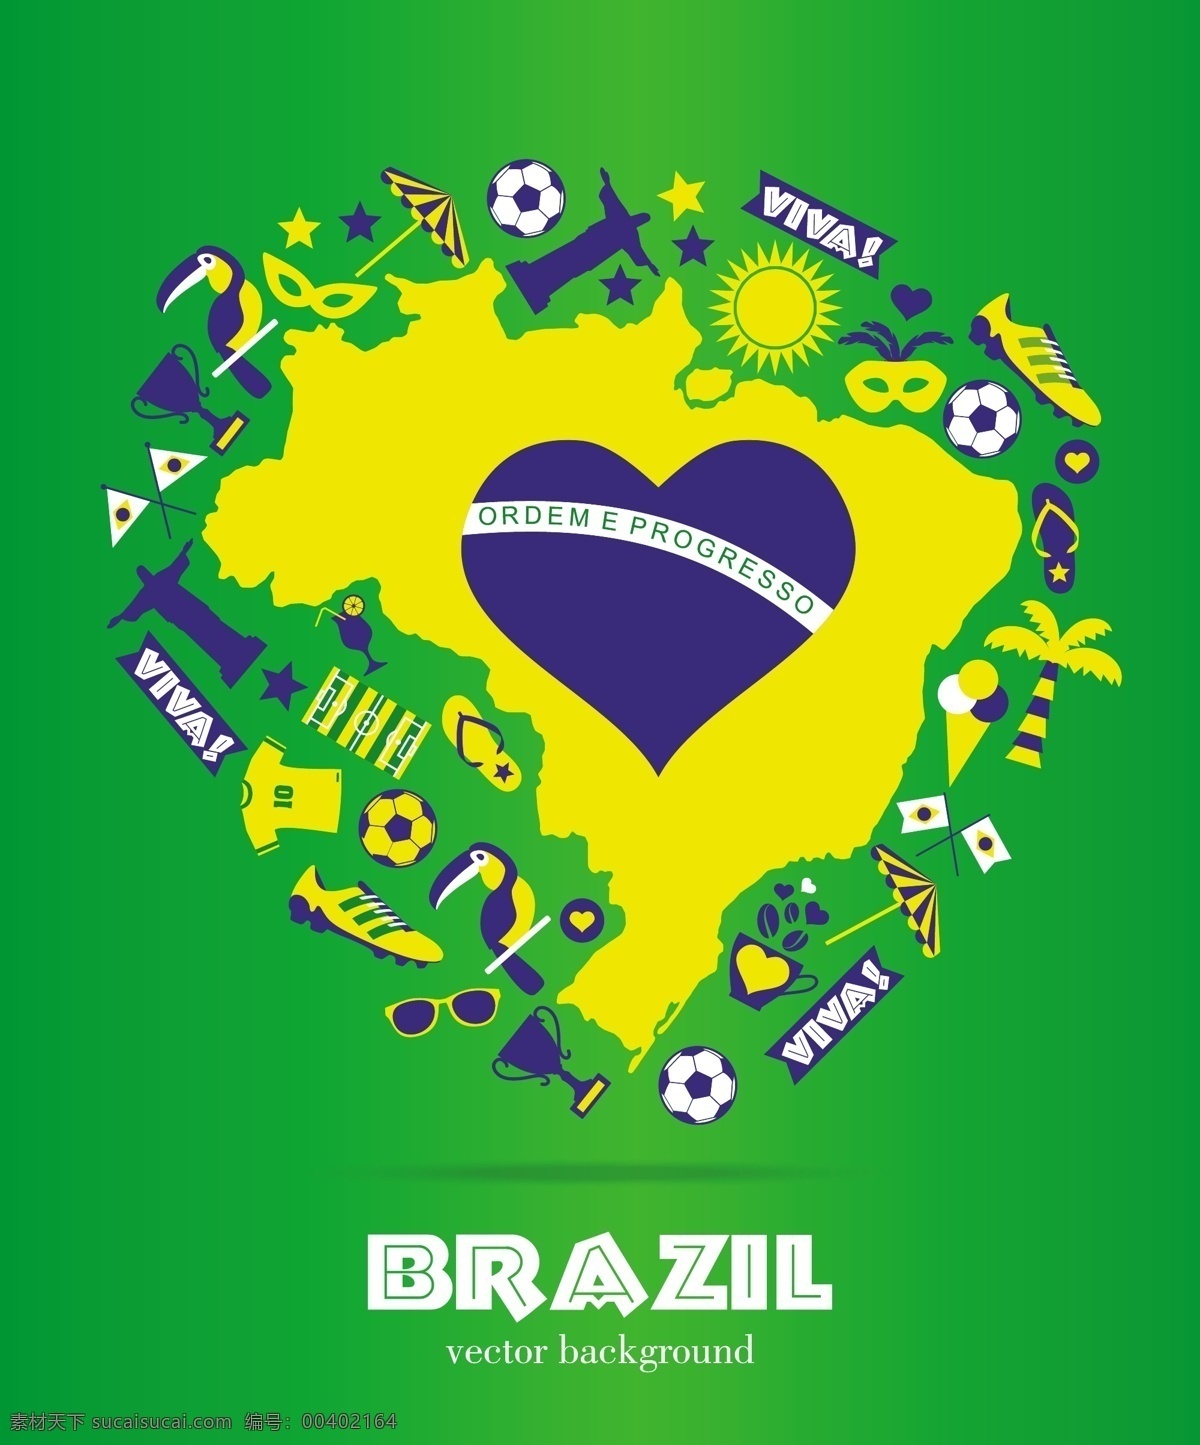 绿色 巴西 地图 背景 模板下载 景区 椰子树 神父雕像 世界杯 足球 体育运动 生活百科 矢量素材